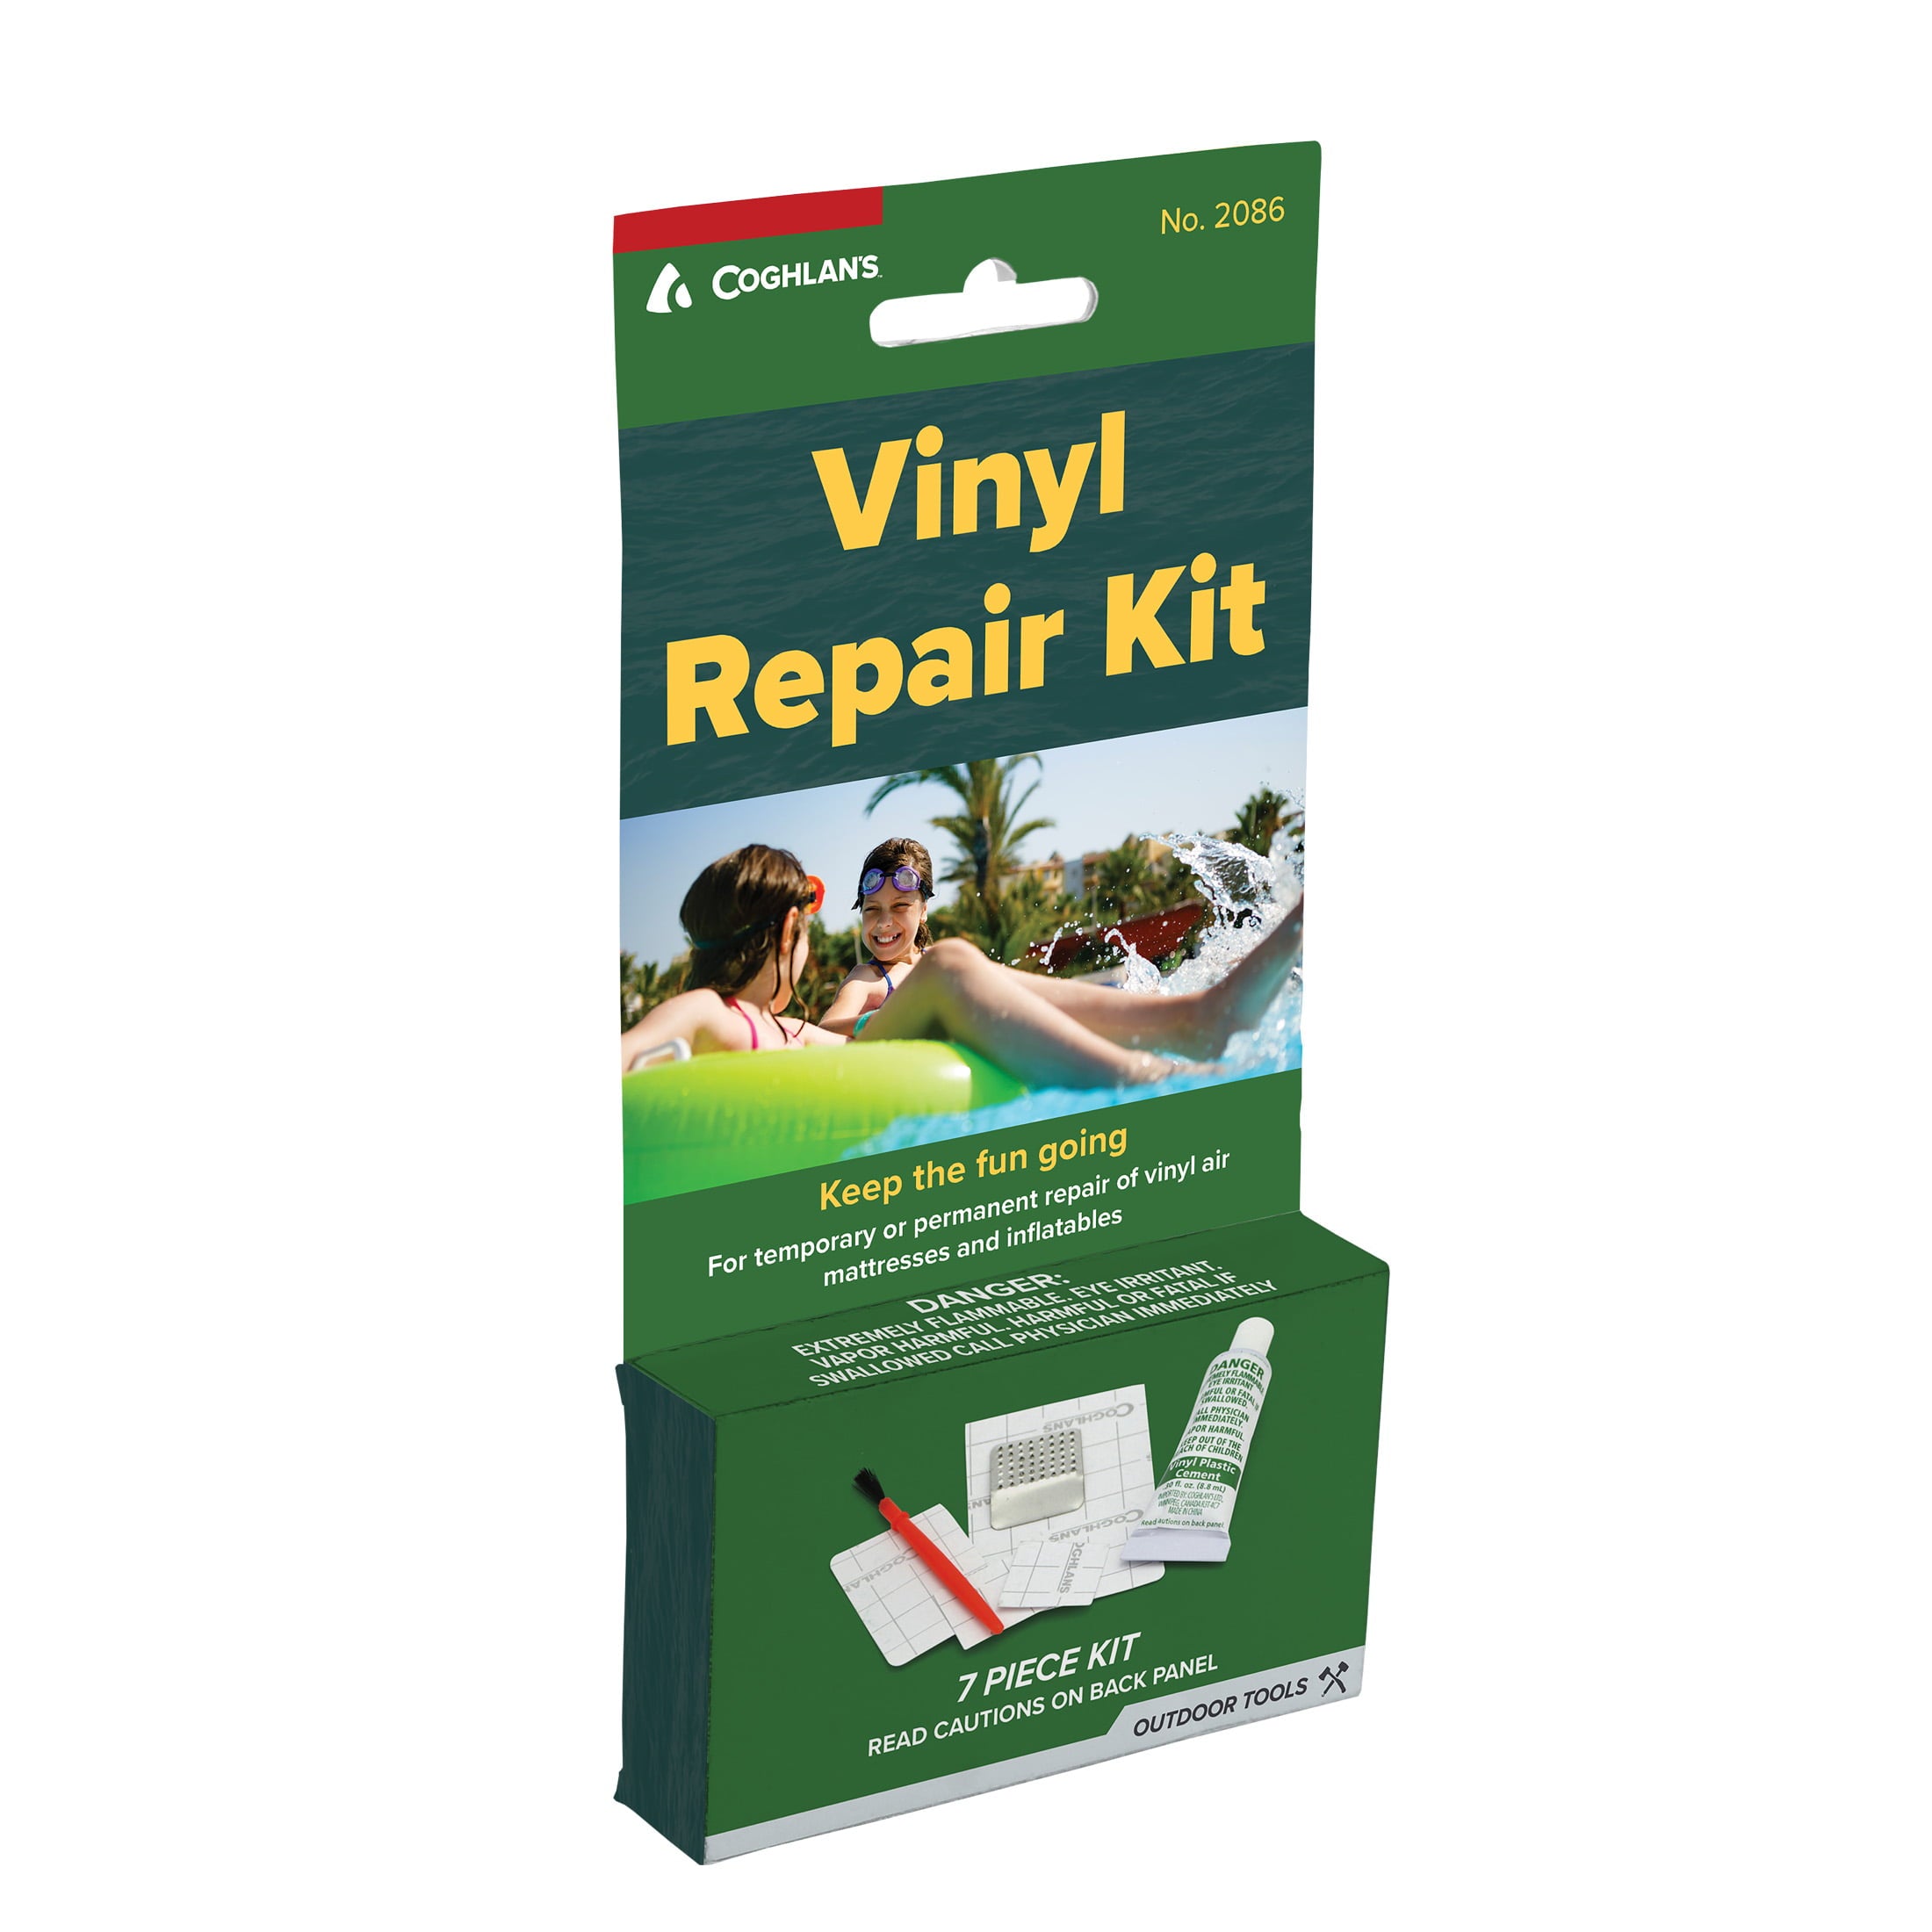 Coghlan's Vinyl Repair Kit for Vinyl Air Mattresses and Inflatables